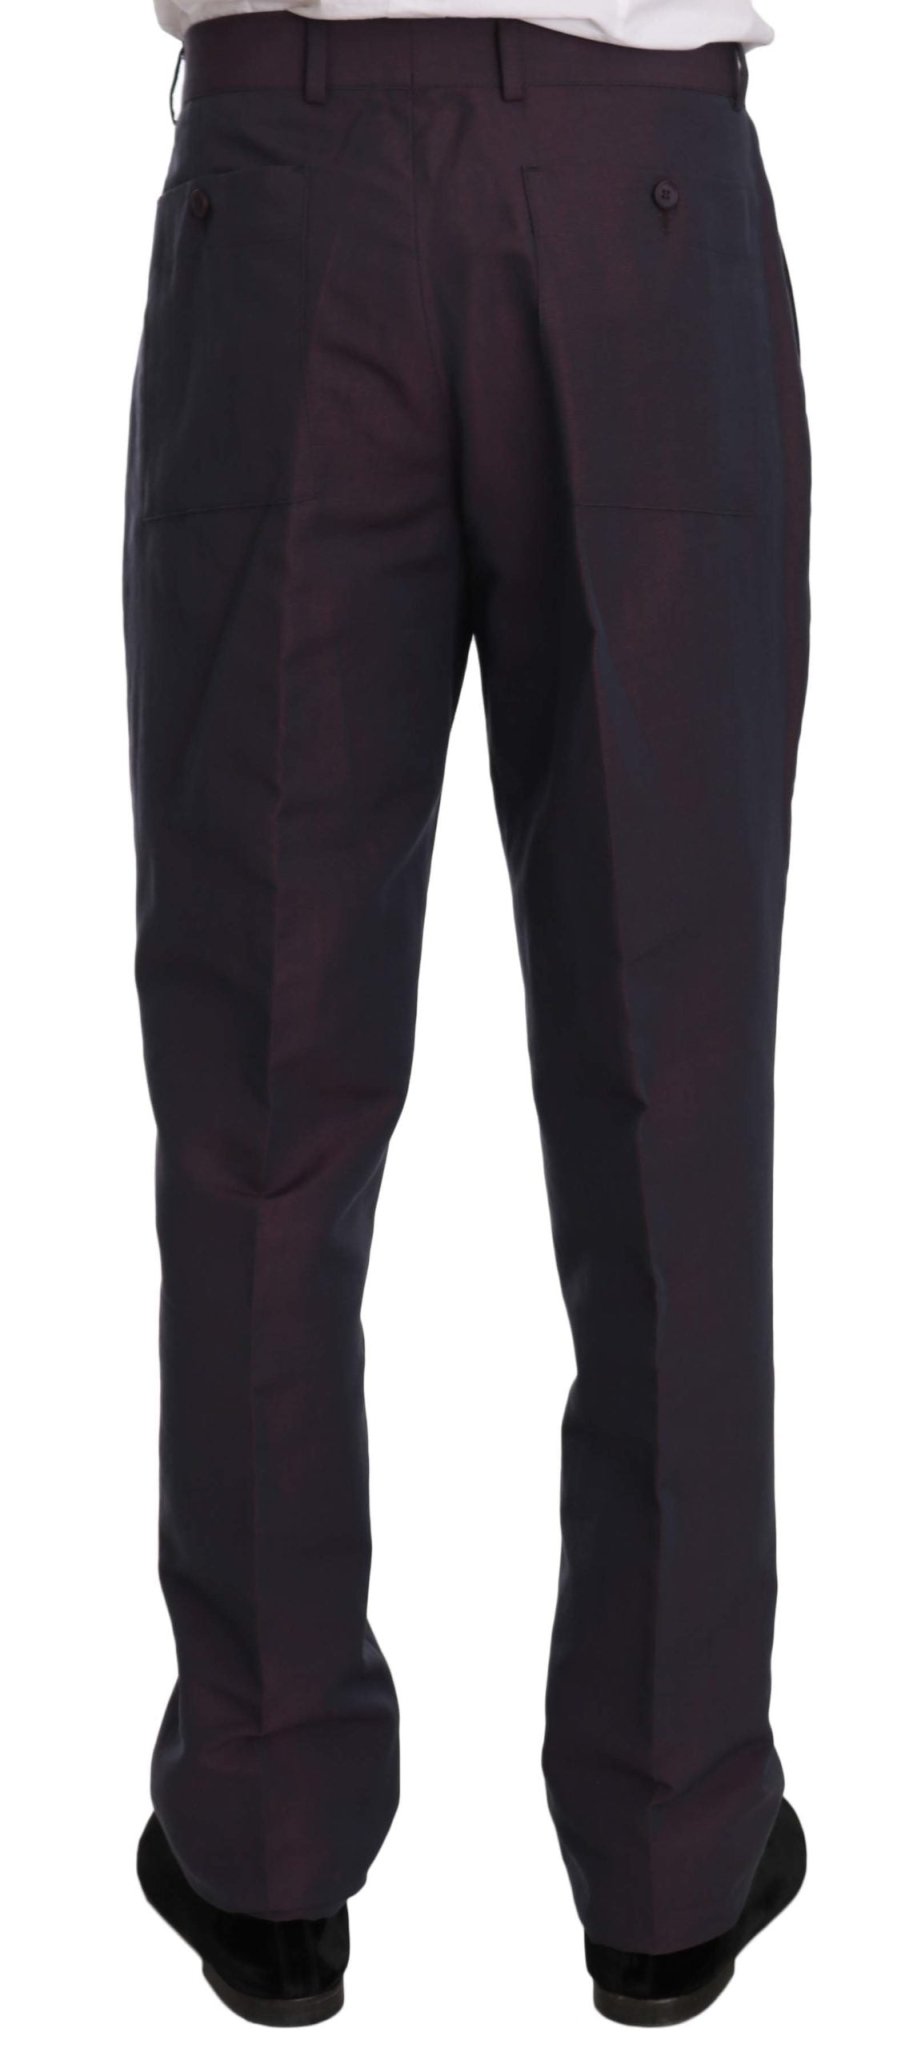 Romeo Gigli Purple Solid Two Piece 3 Button Linen Suit - Fizigo